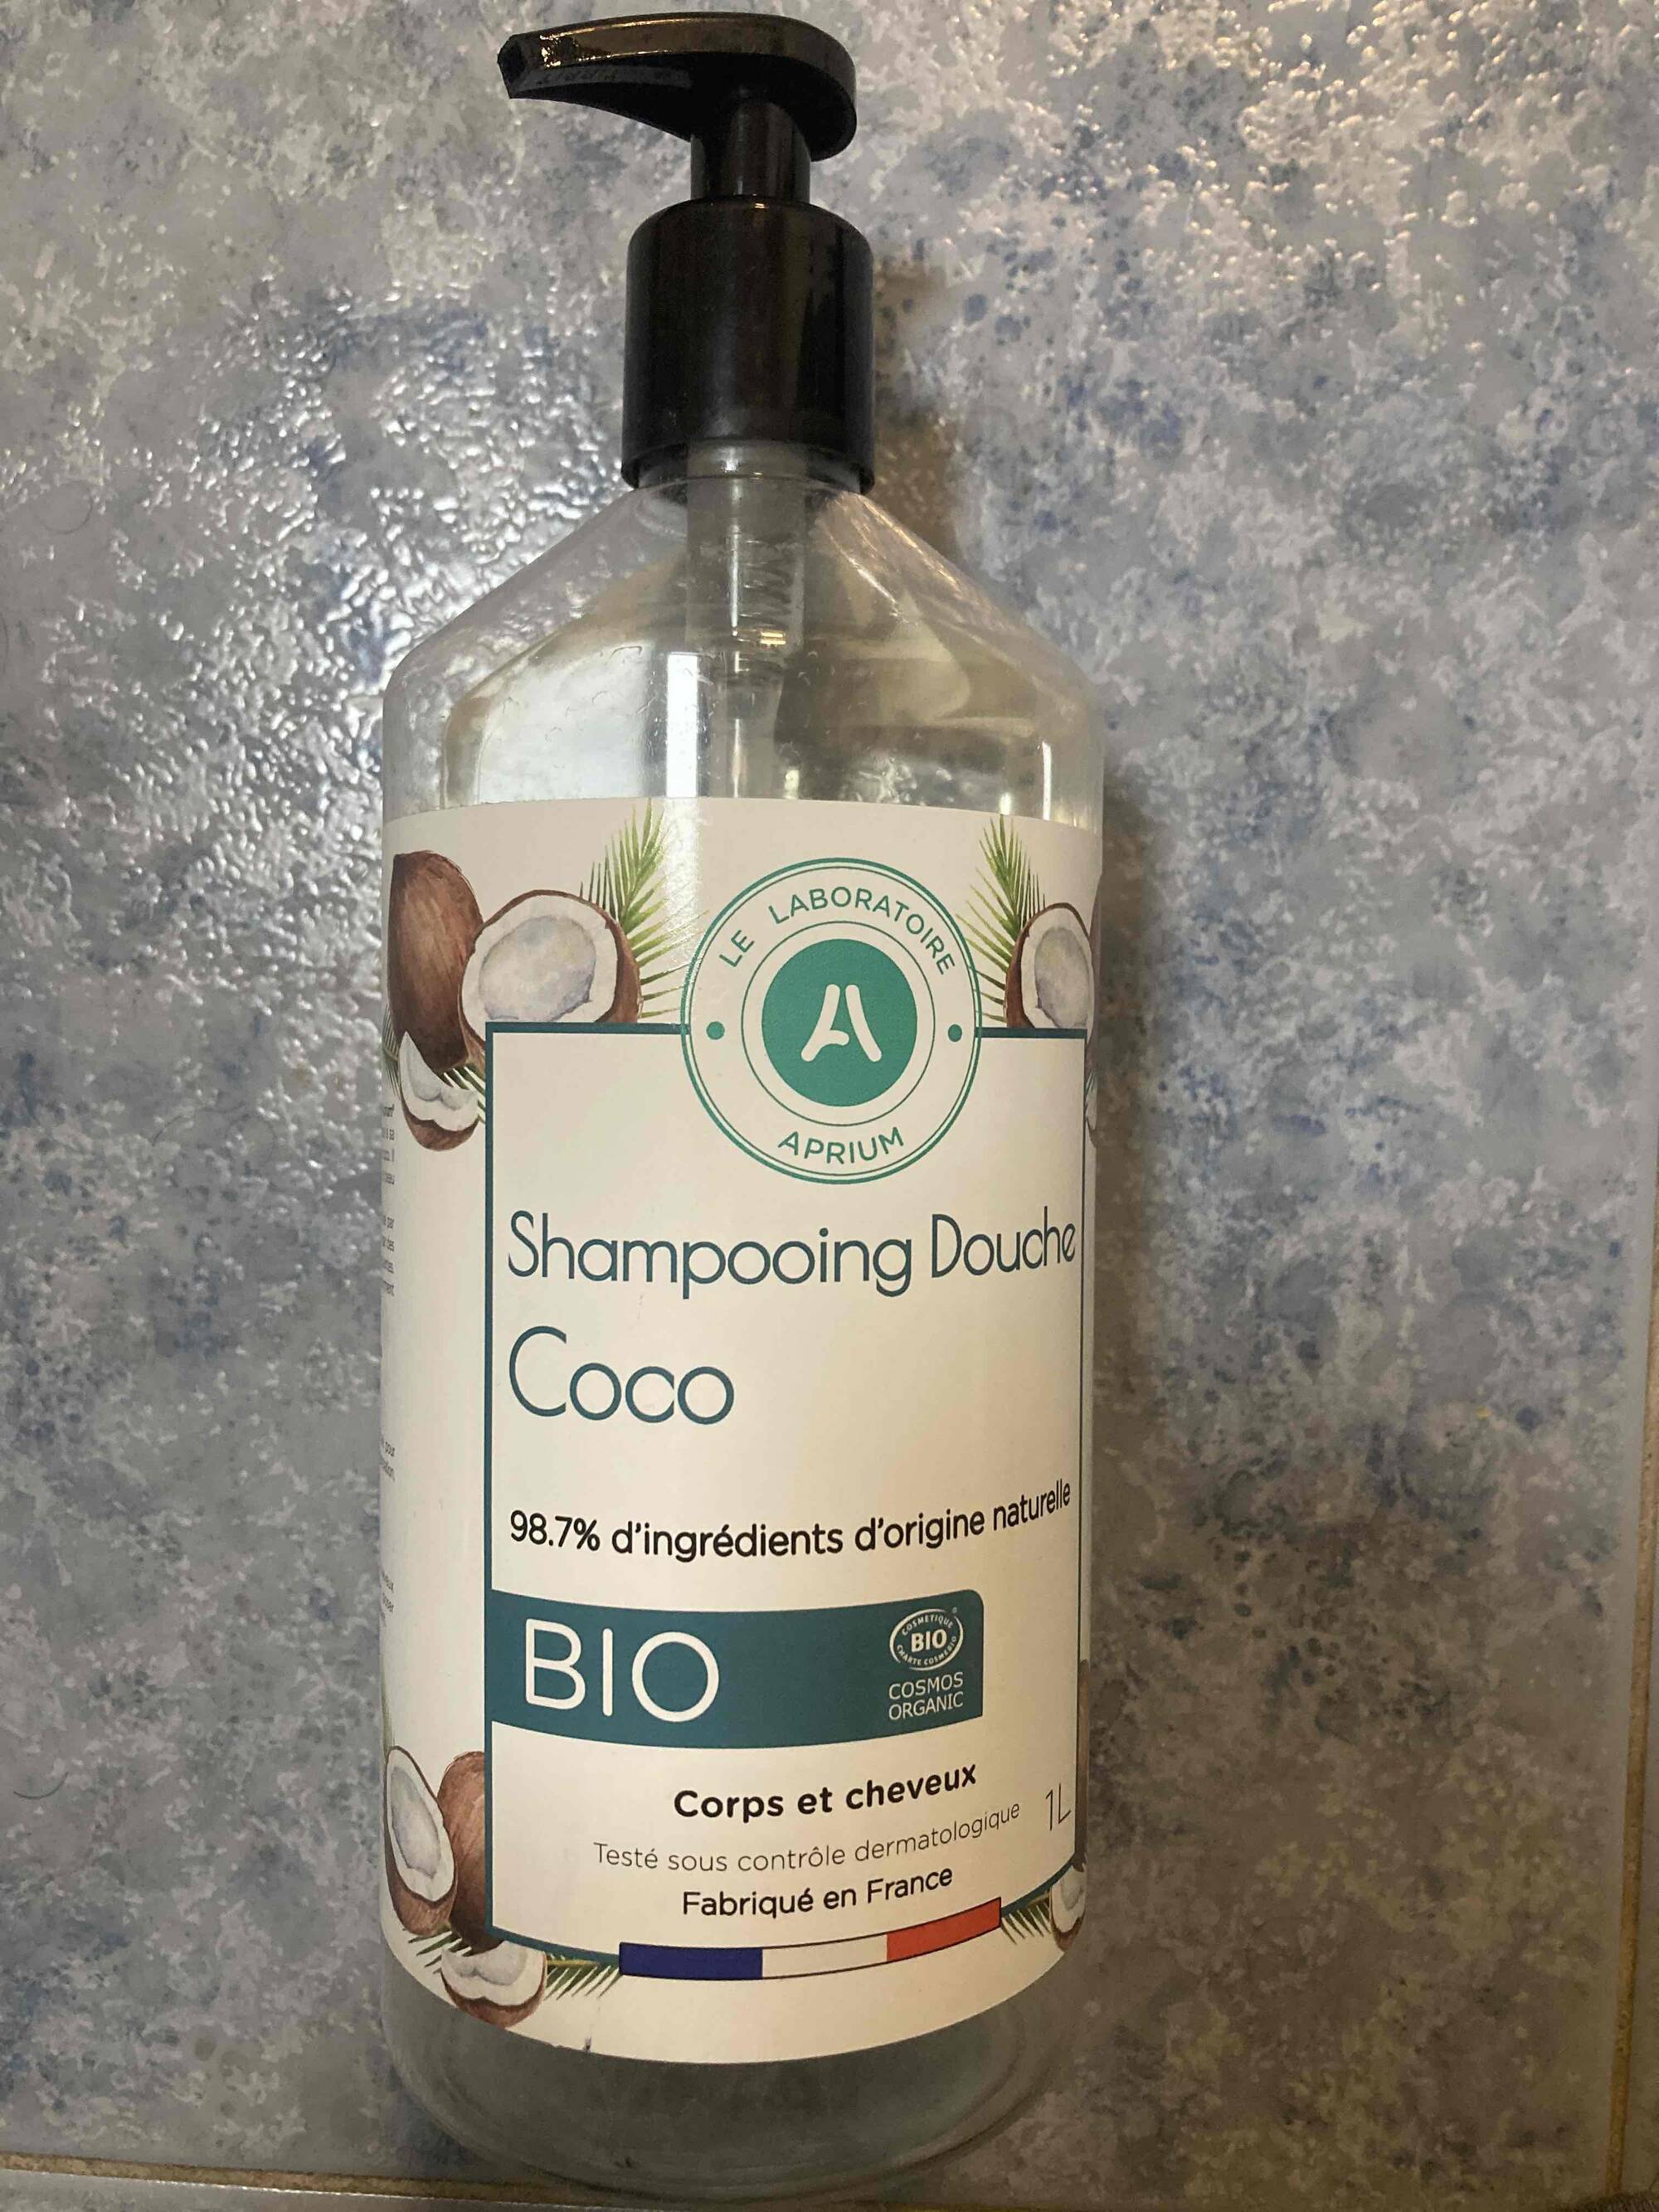 APRIUM - Shampoing douche coco bio